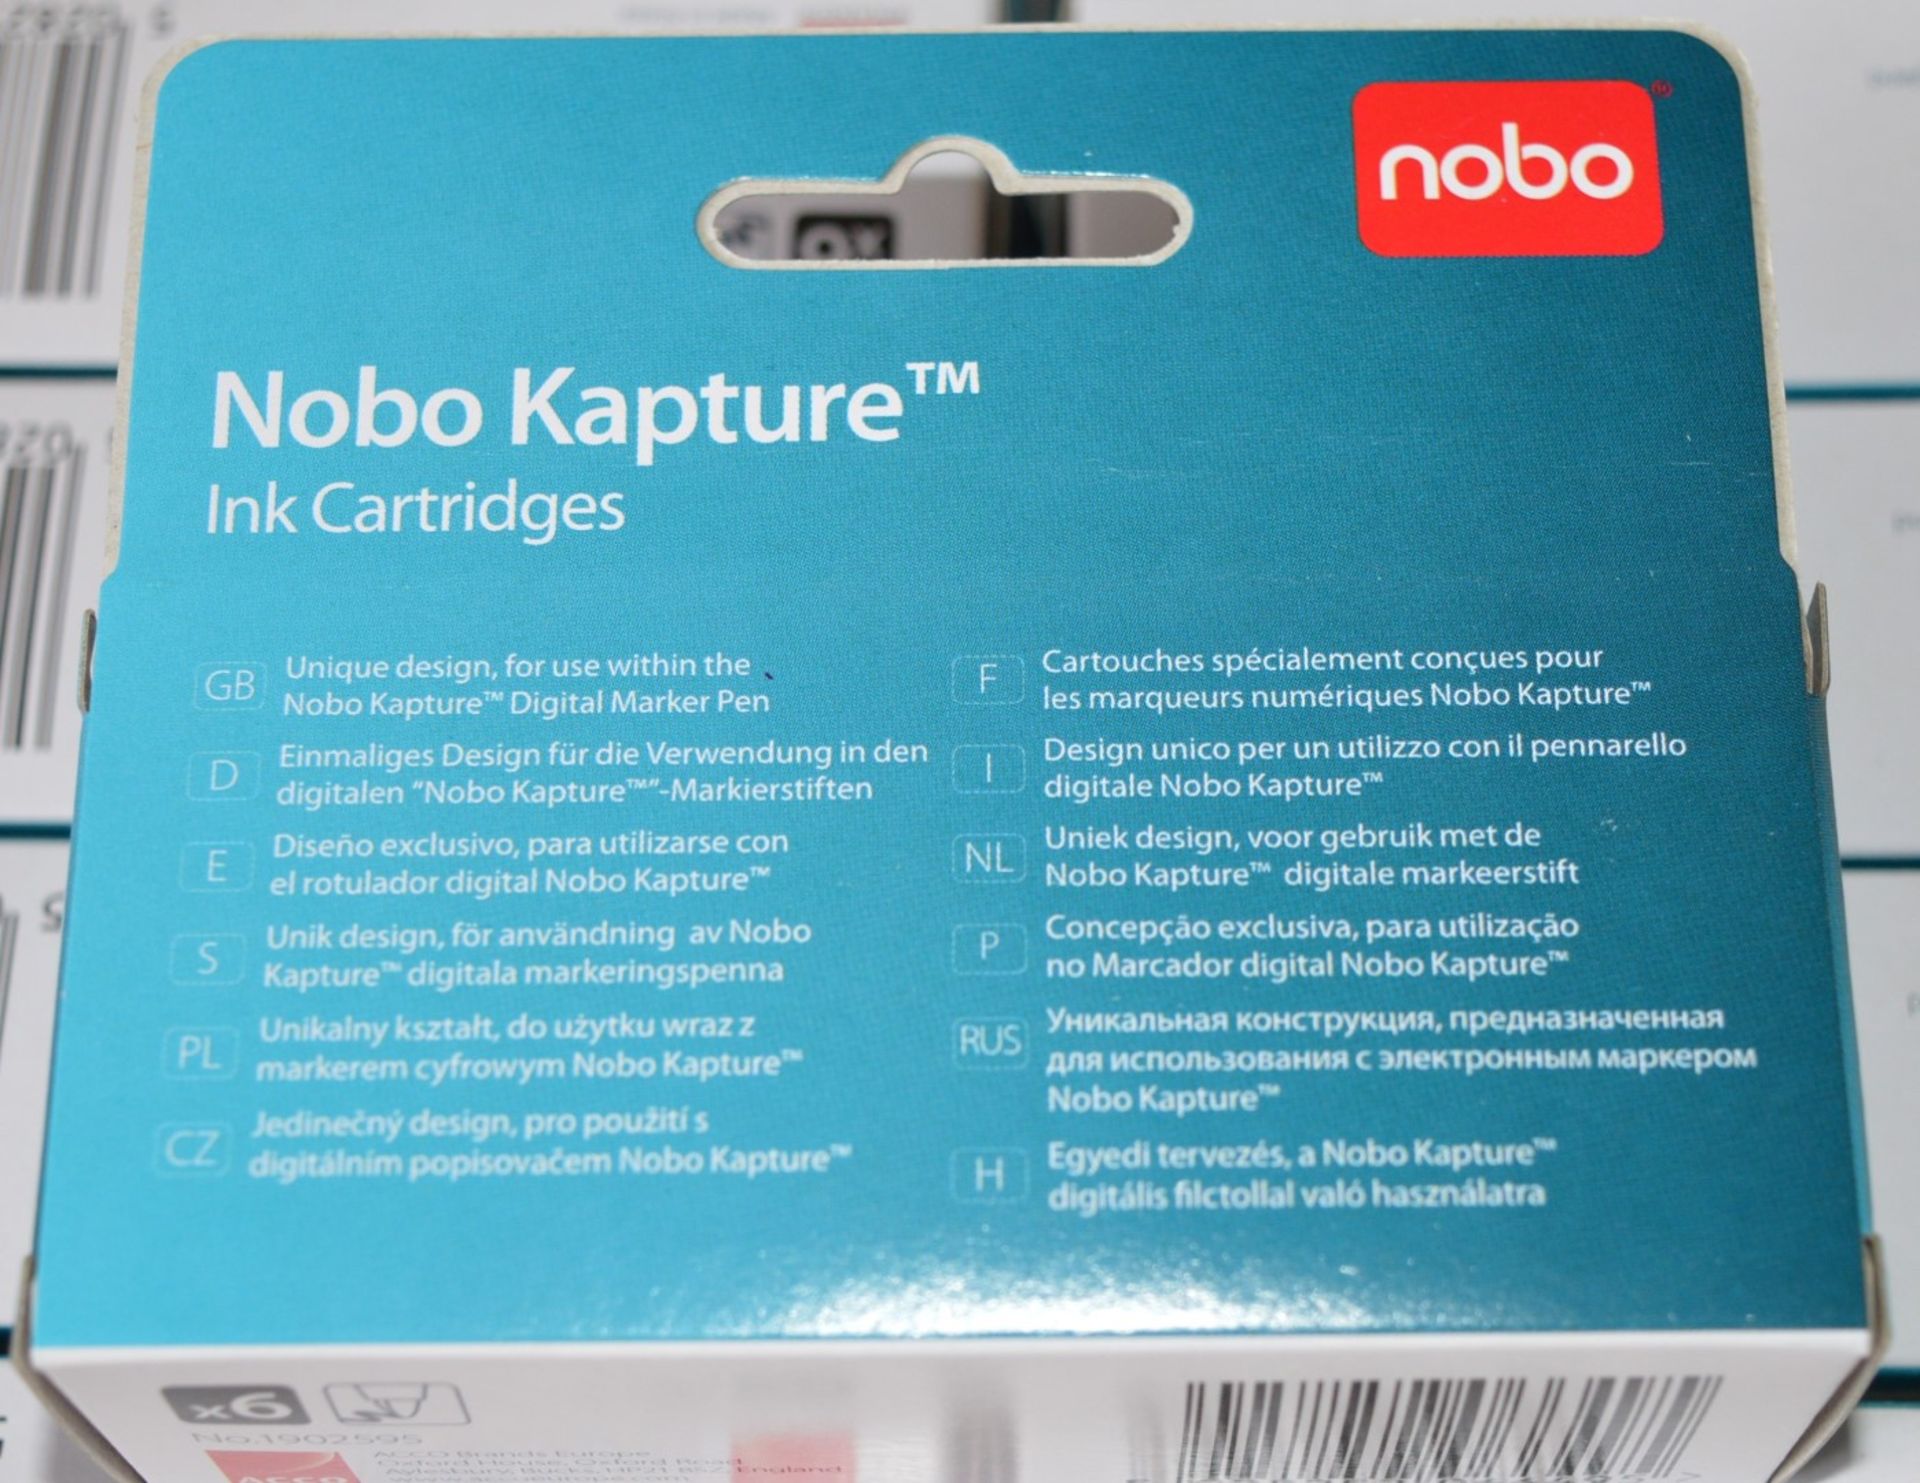 120 x Packs of Nobo Kapture Ink Cartridges - Includes 120 x Packs of 6 x Ink Cartridges - For Use - Image 8 of 11